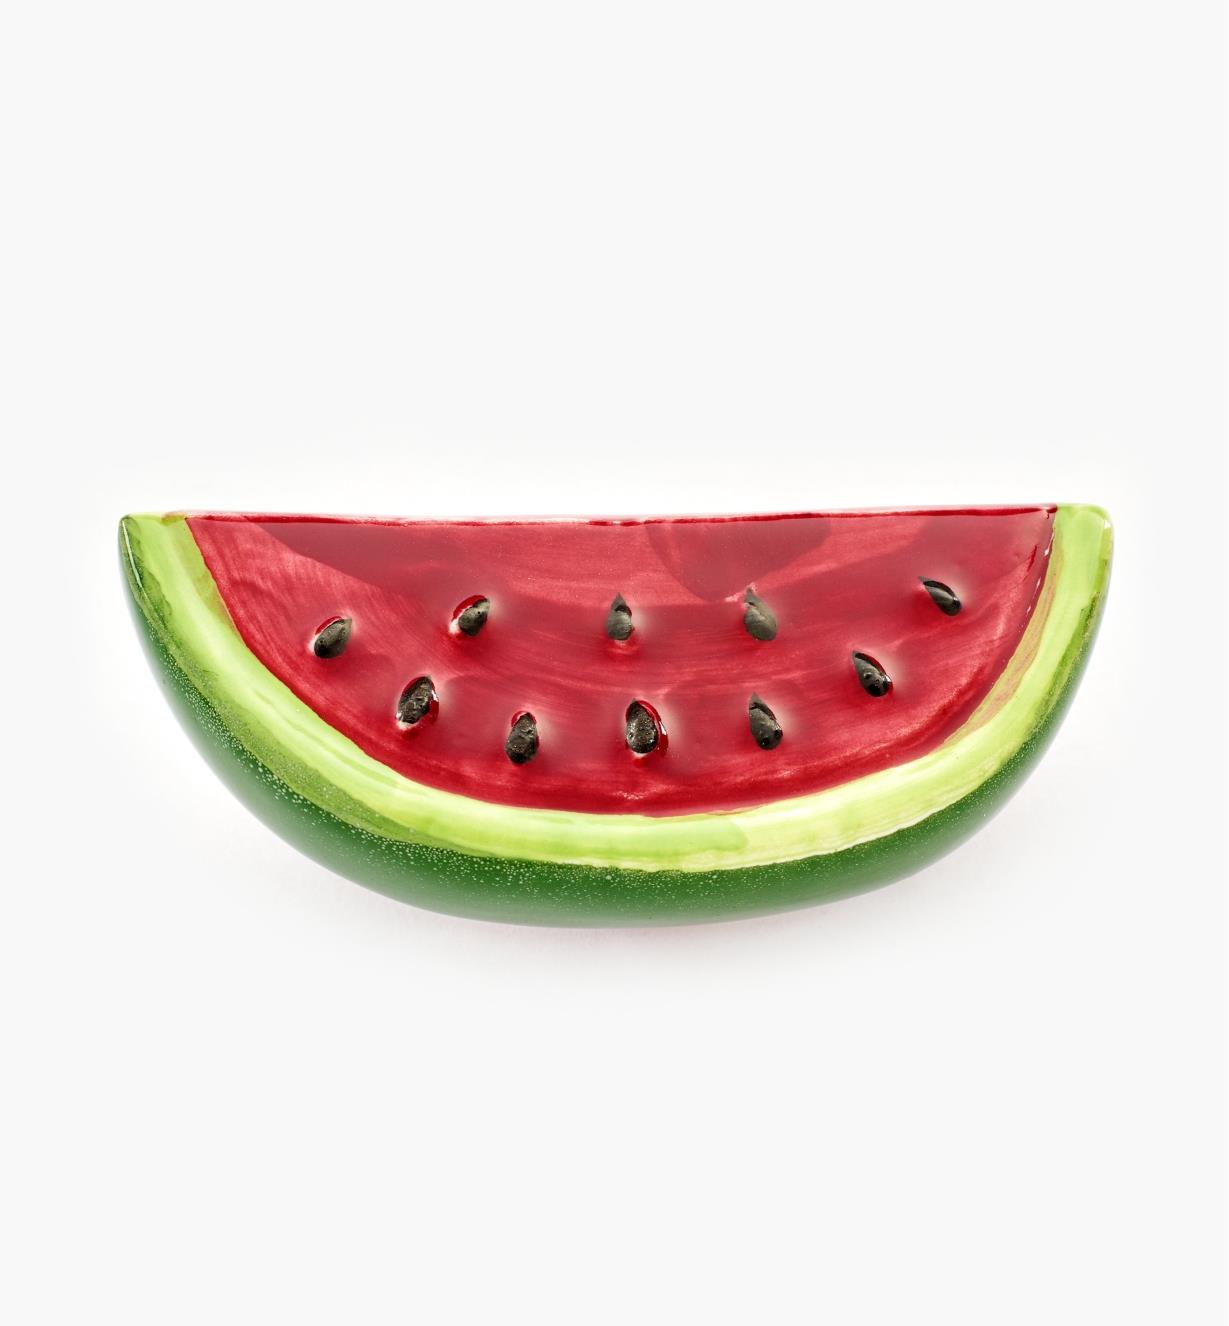 00W5262 - 2 1/8" x 7/8" Watermelon Knob